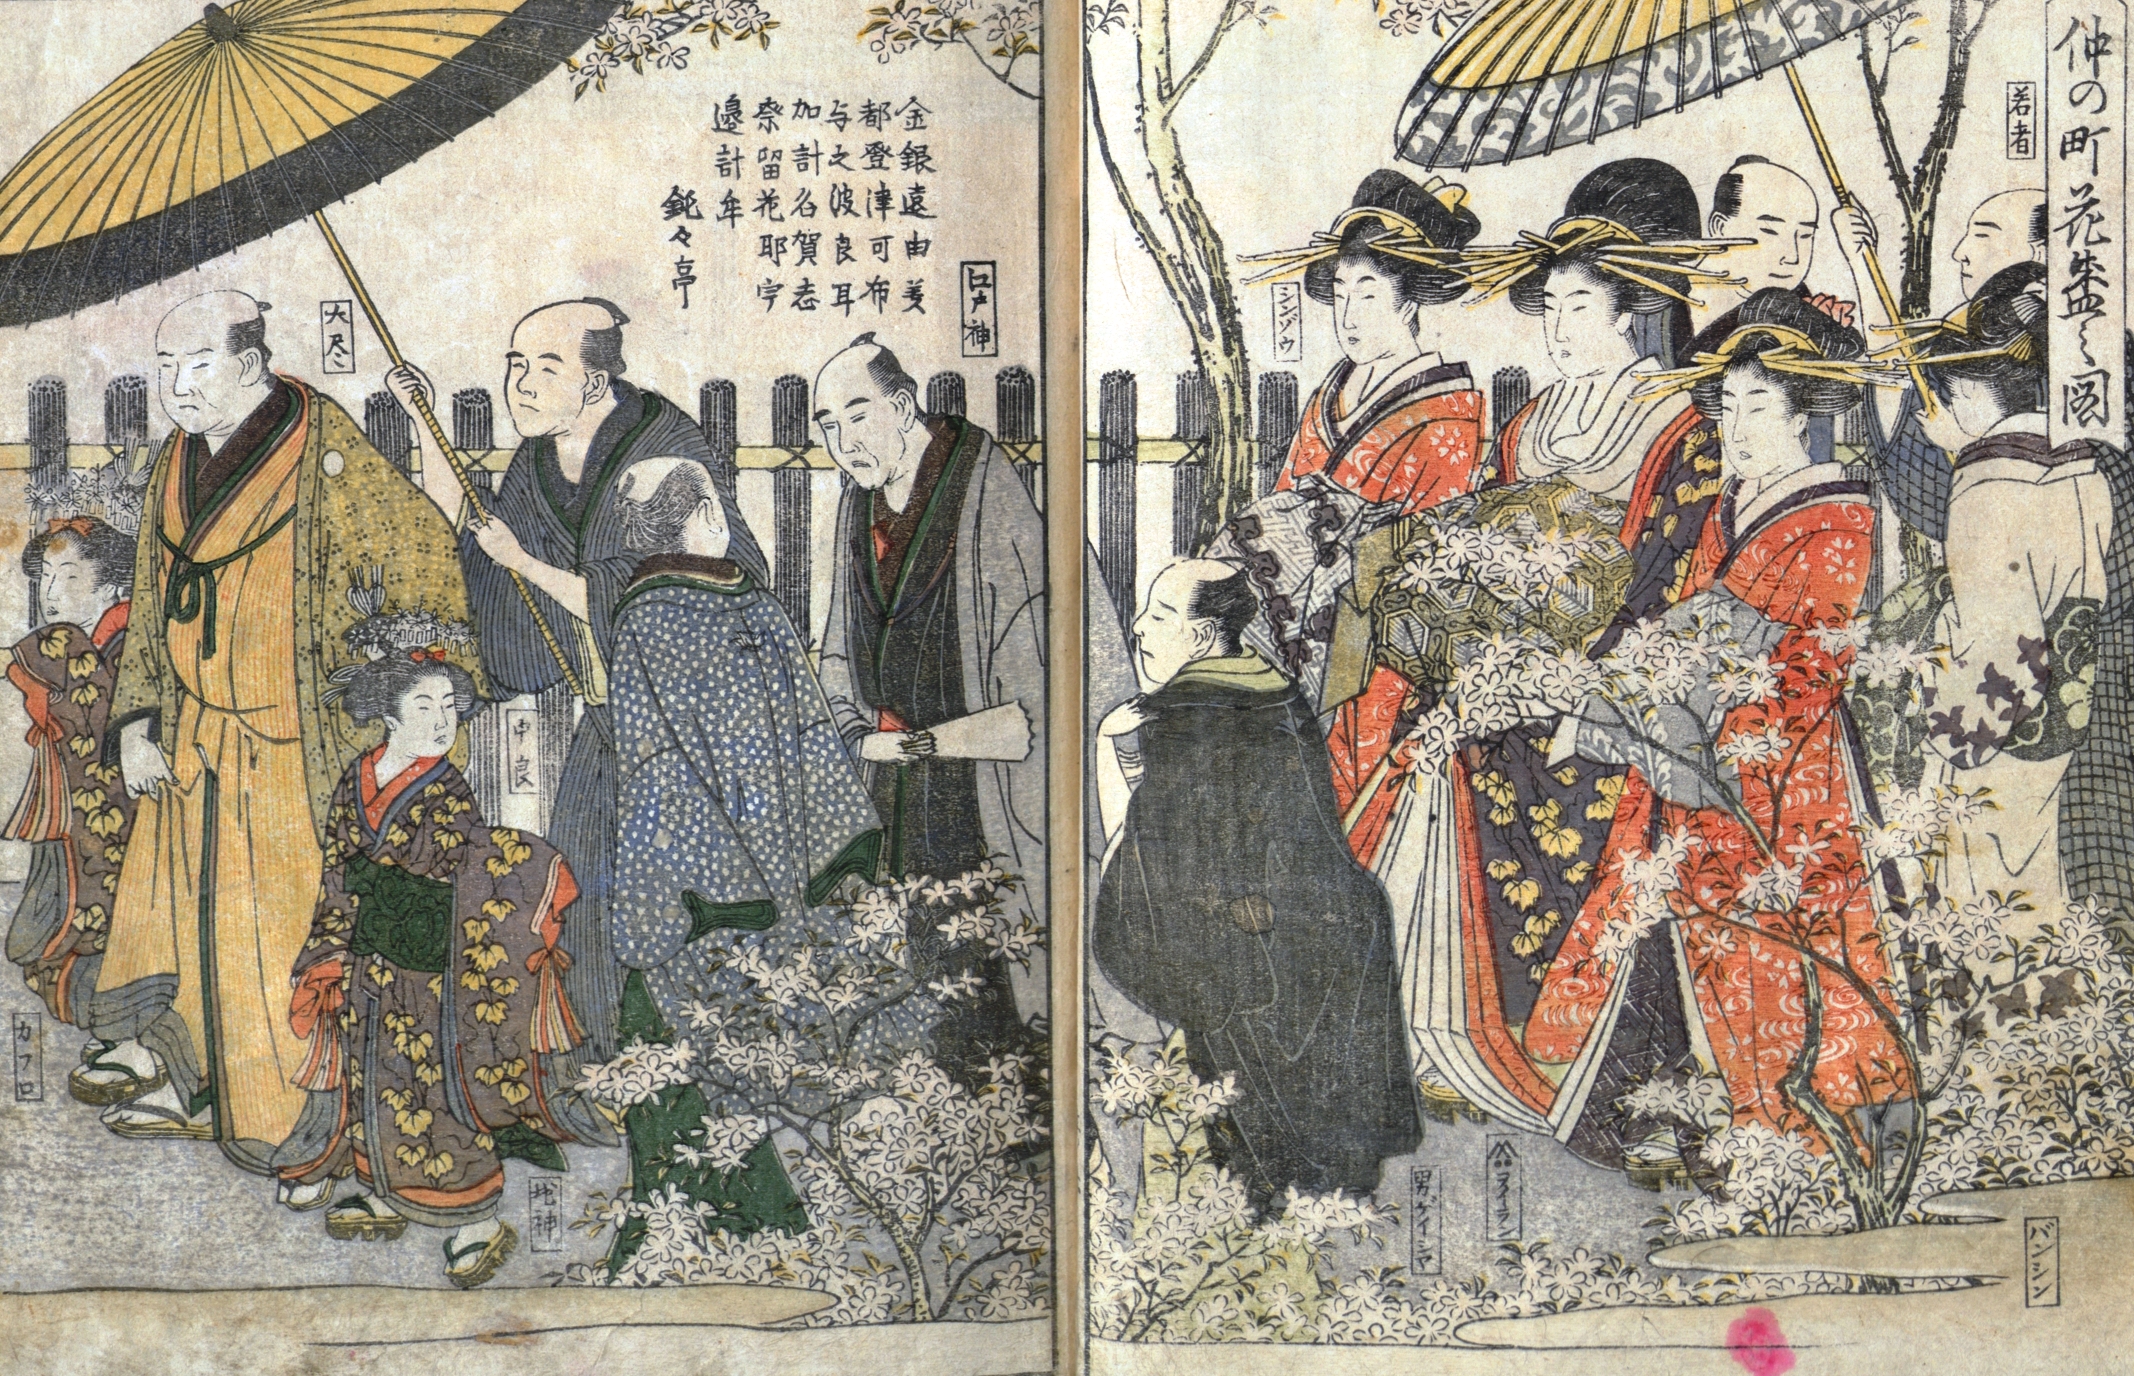  Kitagawa Utamaro, L'Almanach des Maisons vertes, Les Cerisiers en fleurs dans la rue centrale, gravure sur bois en couleurs, 1804, Bibliothèque de l'INHA, 8 EST 156